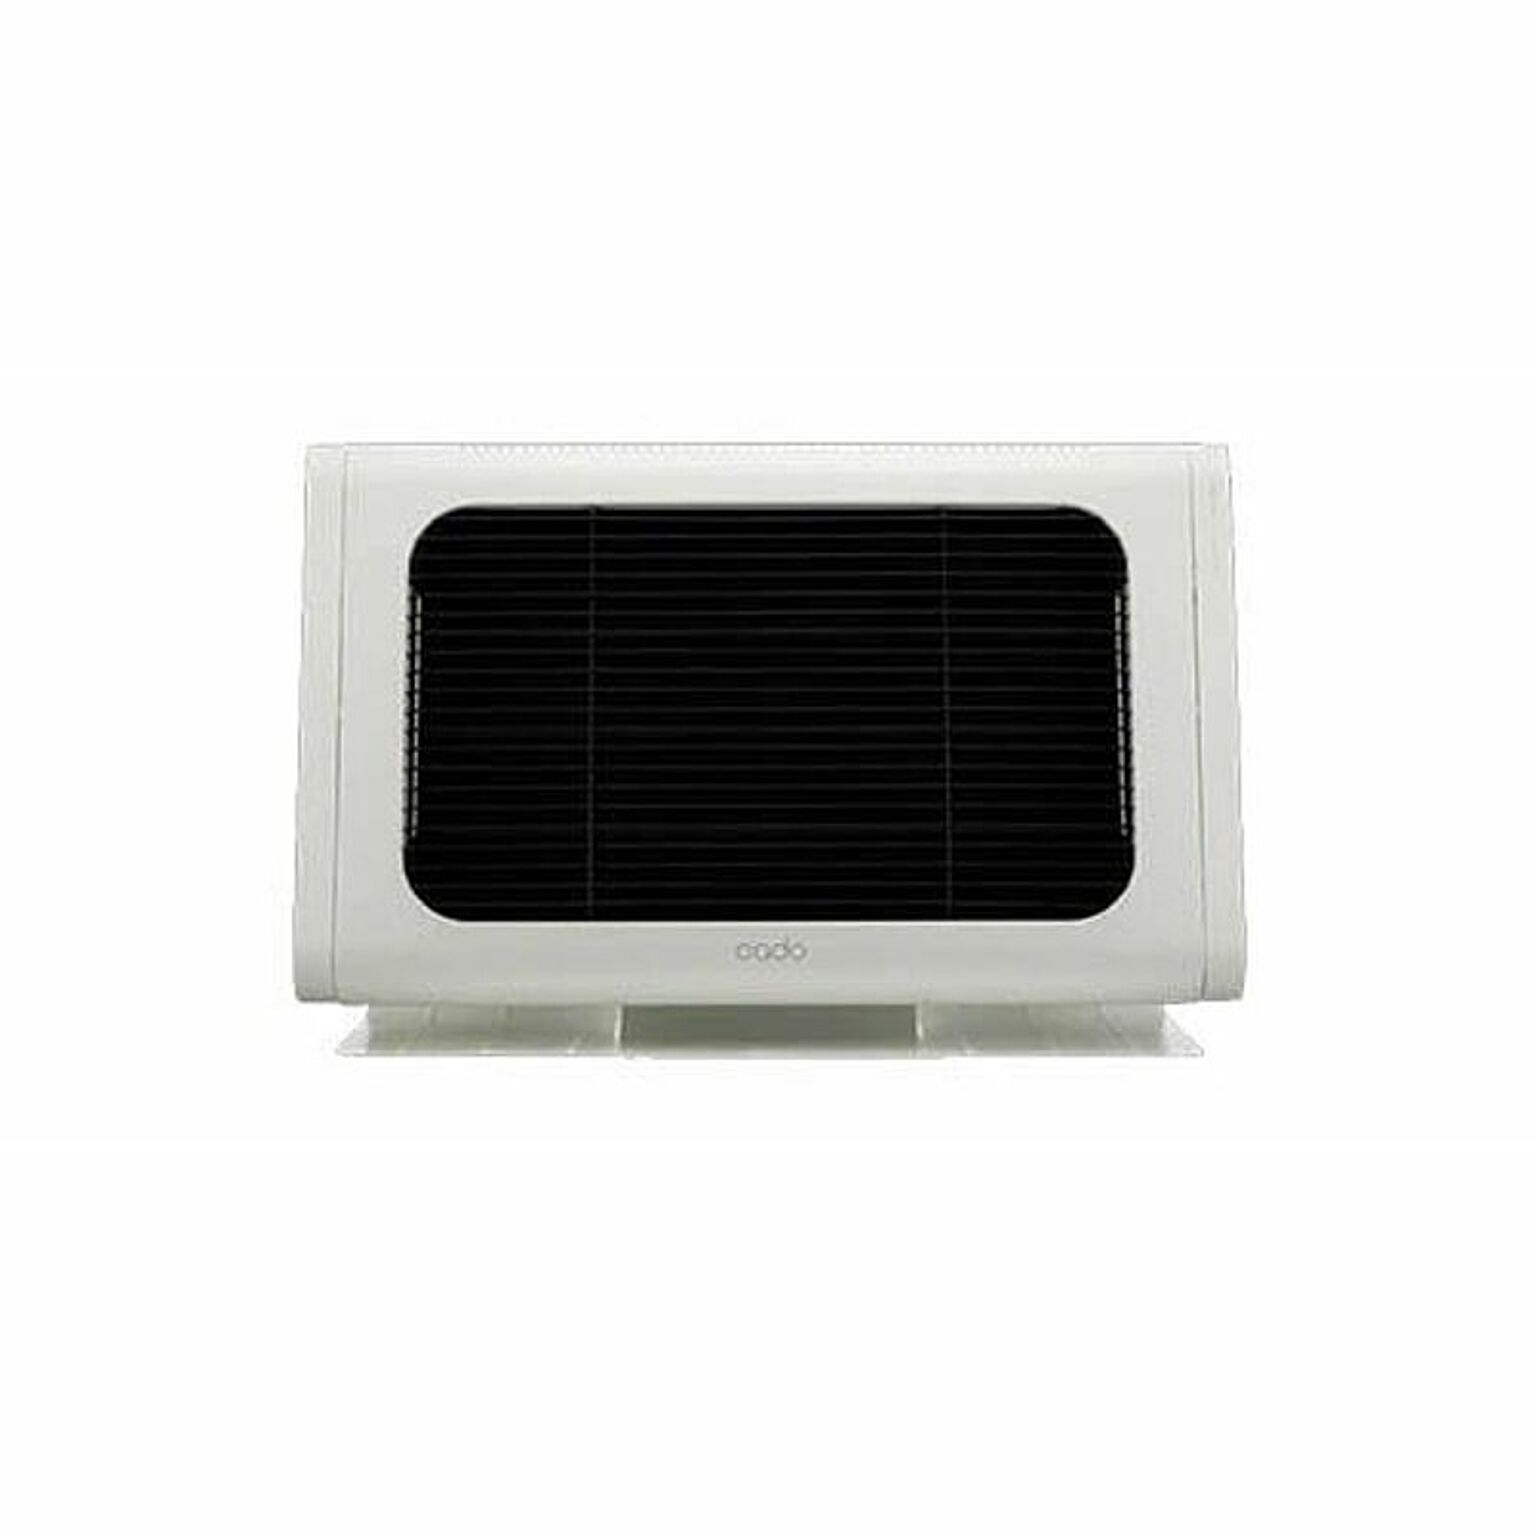 ELECTRIC HEATER 電気ヒーター SOL-002 電気ヒーター/電気ストーブ/1000W/暖房/暖房機器/タイマー付き